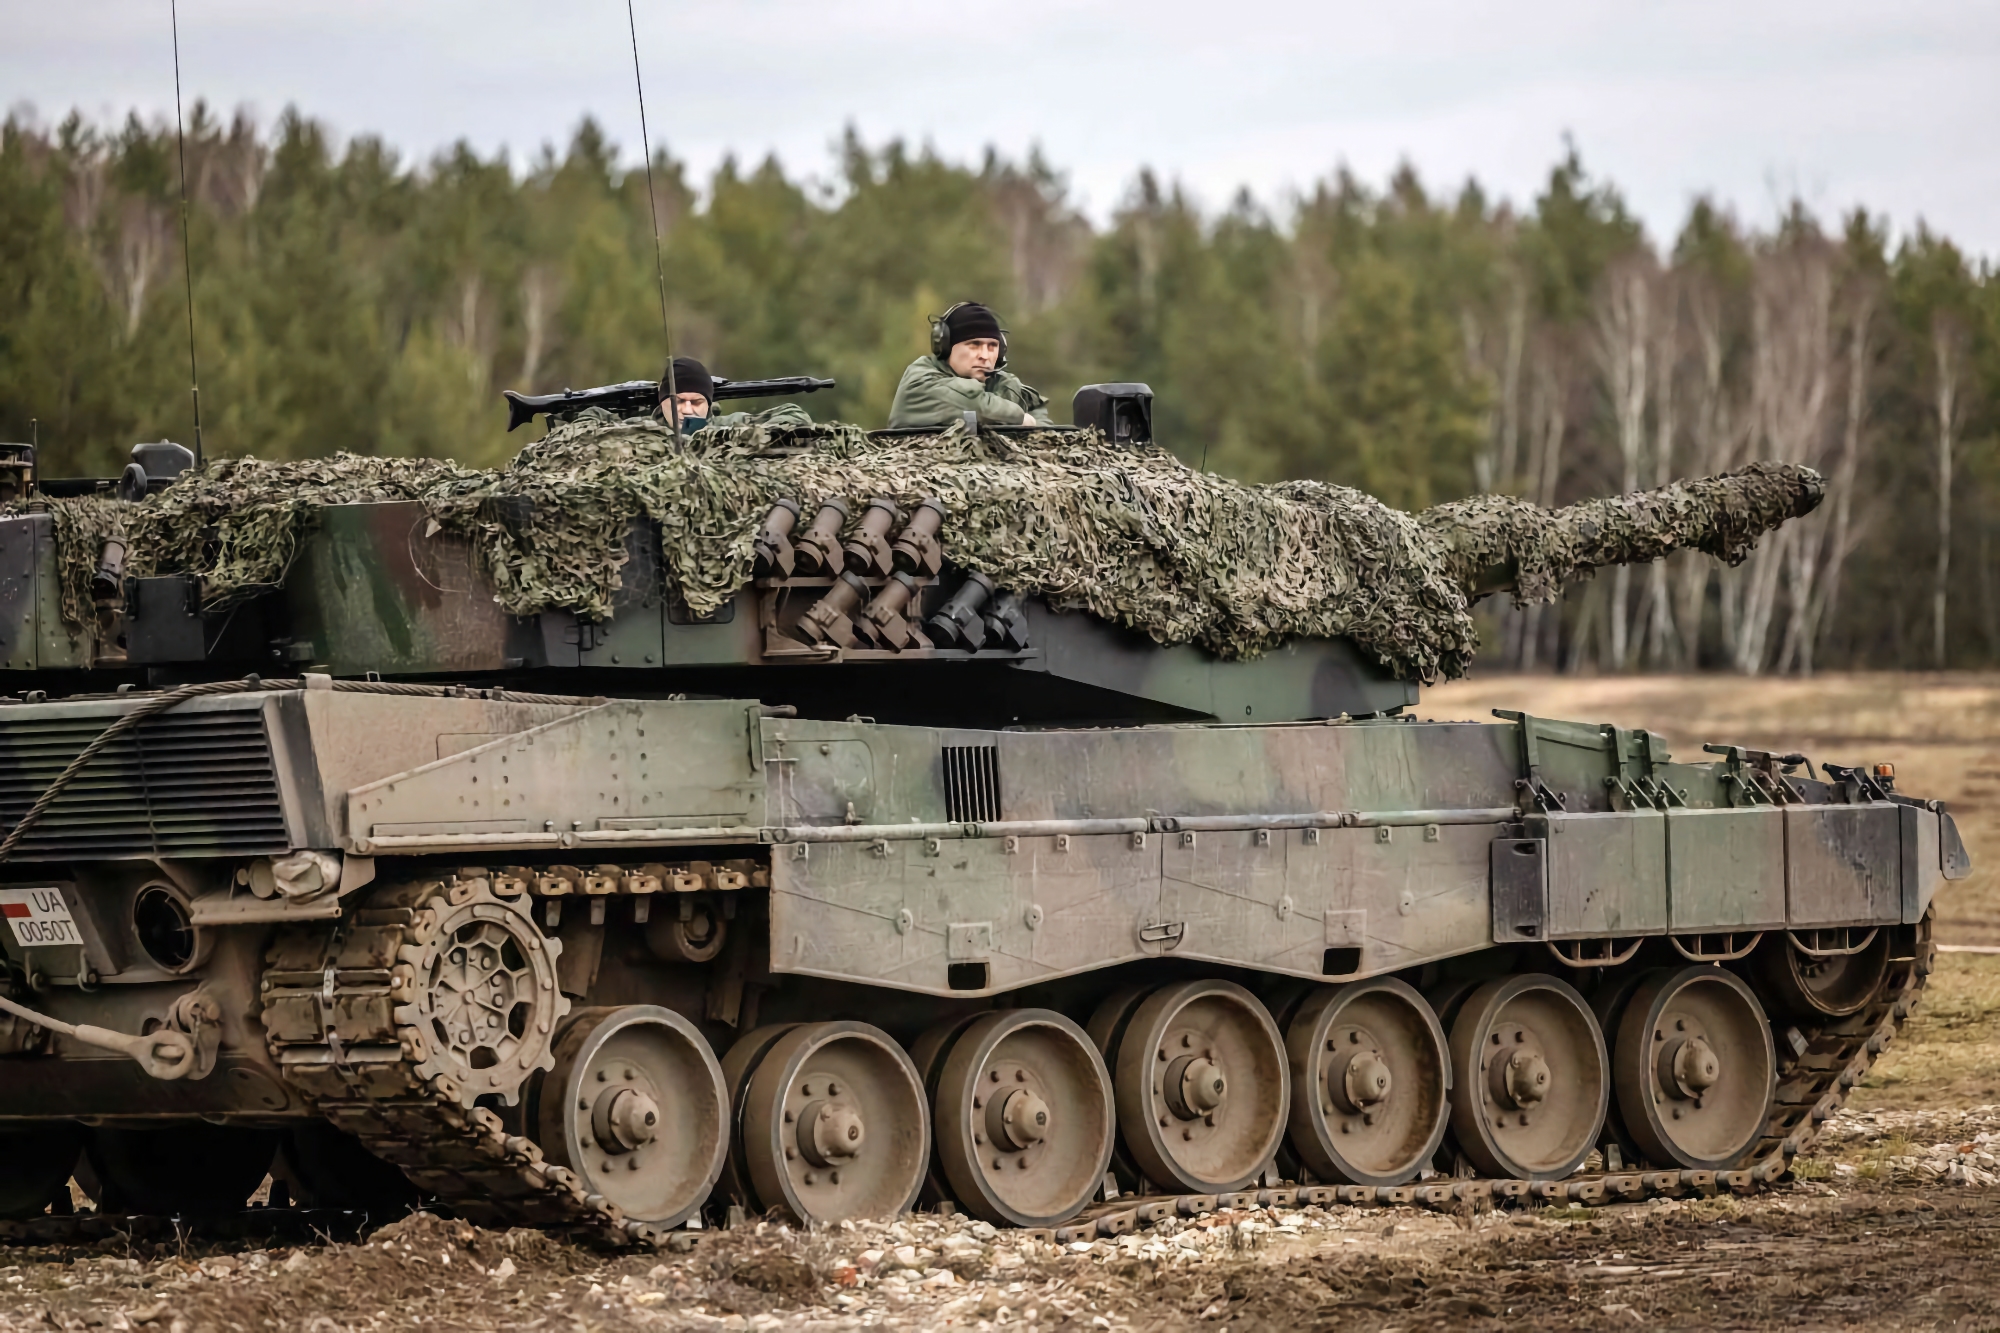 20 M113 APC, cztery czołgi Leopard 2 i Role 2 oraz szpital polowy: Hiszpania wyśle Ukrainie nowy pakiet pomocy wojskowej